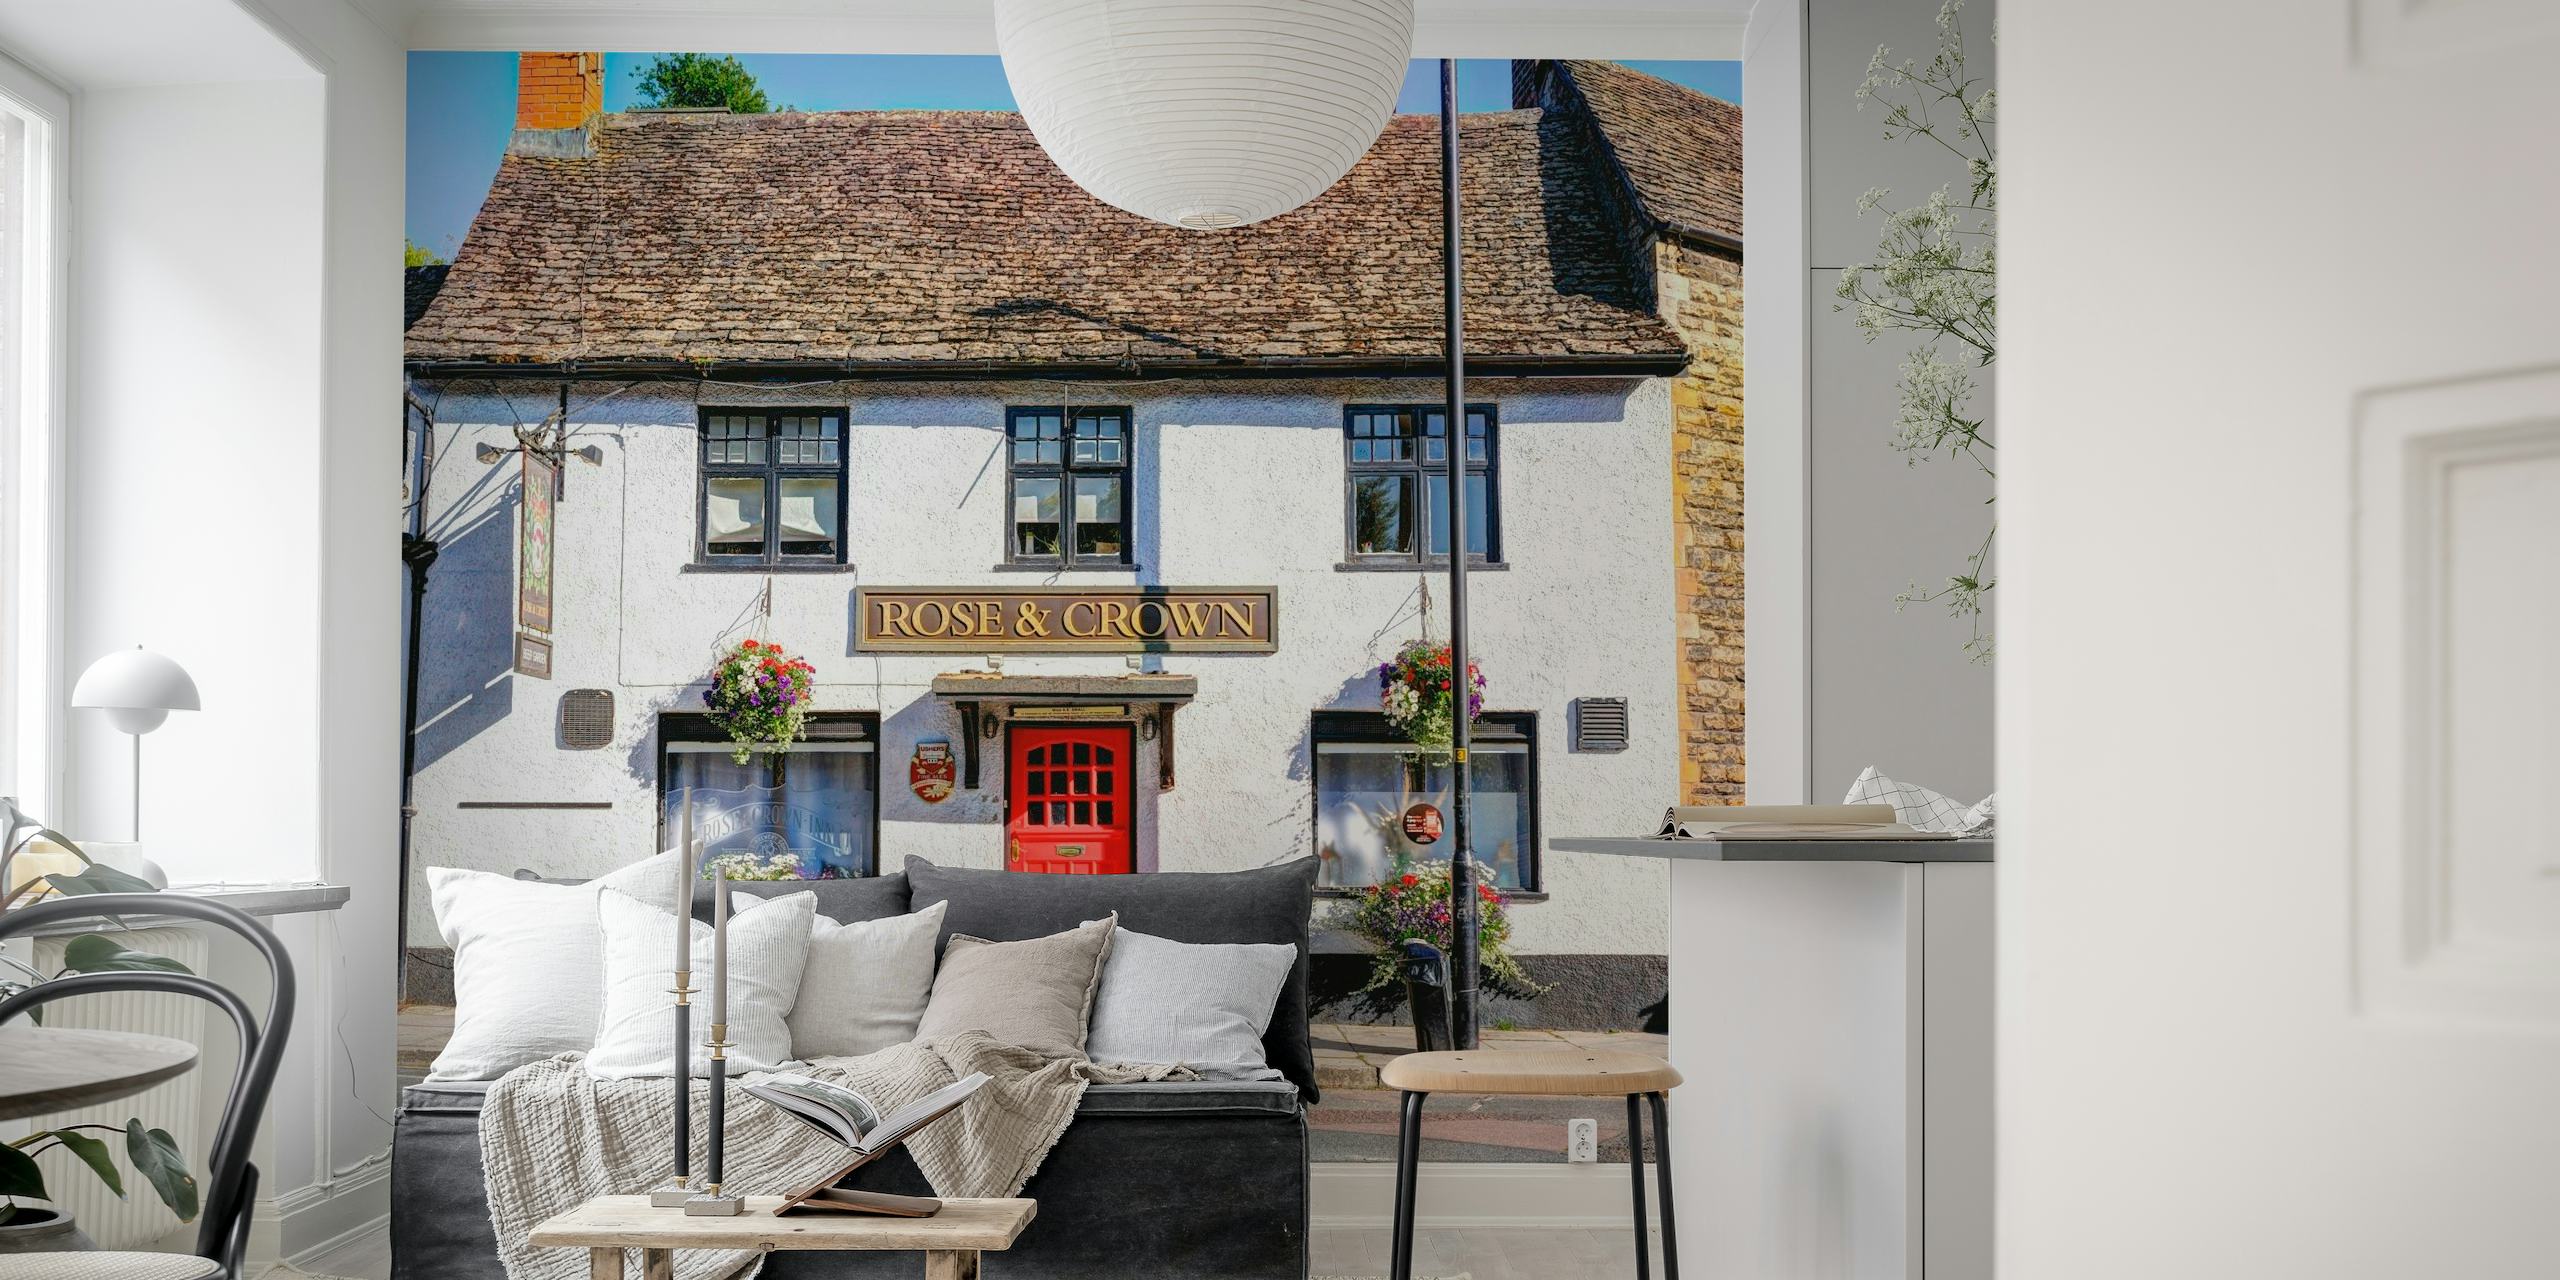 Gammelt tradisjonell britisk pub-veggmaleri med en rød dør